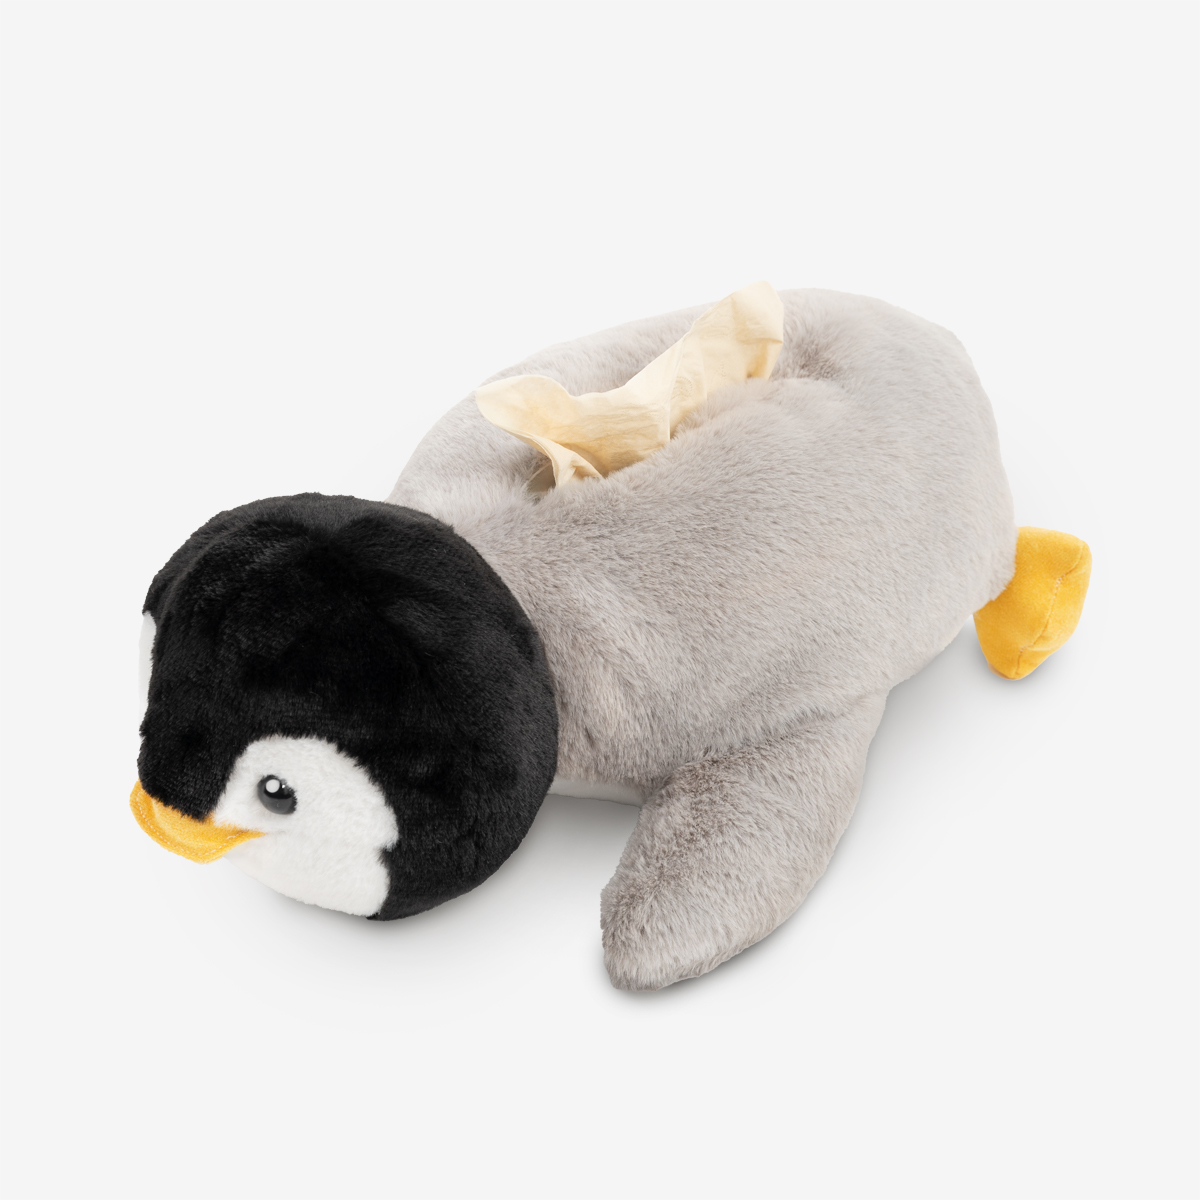 Салфетница-игрушка "Пингвин" 